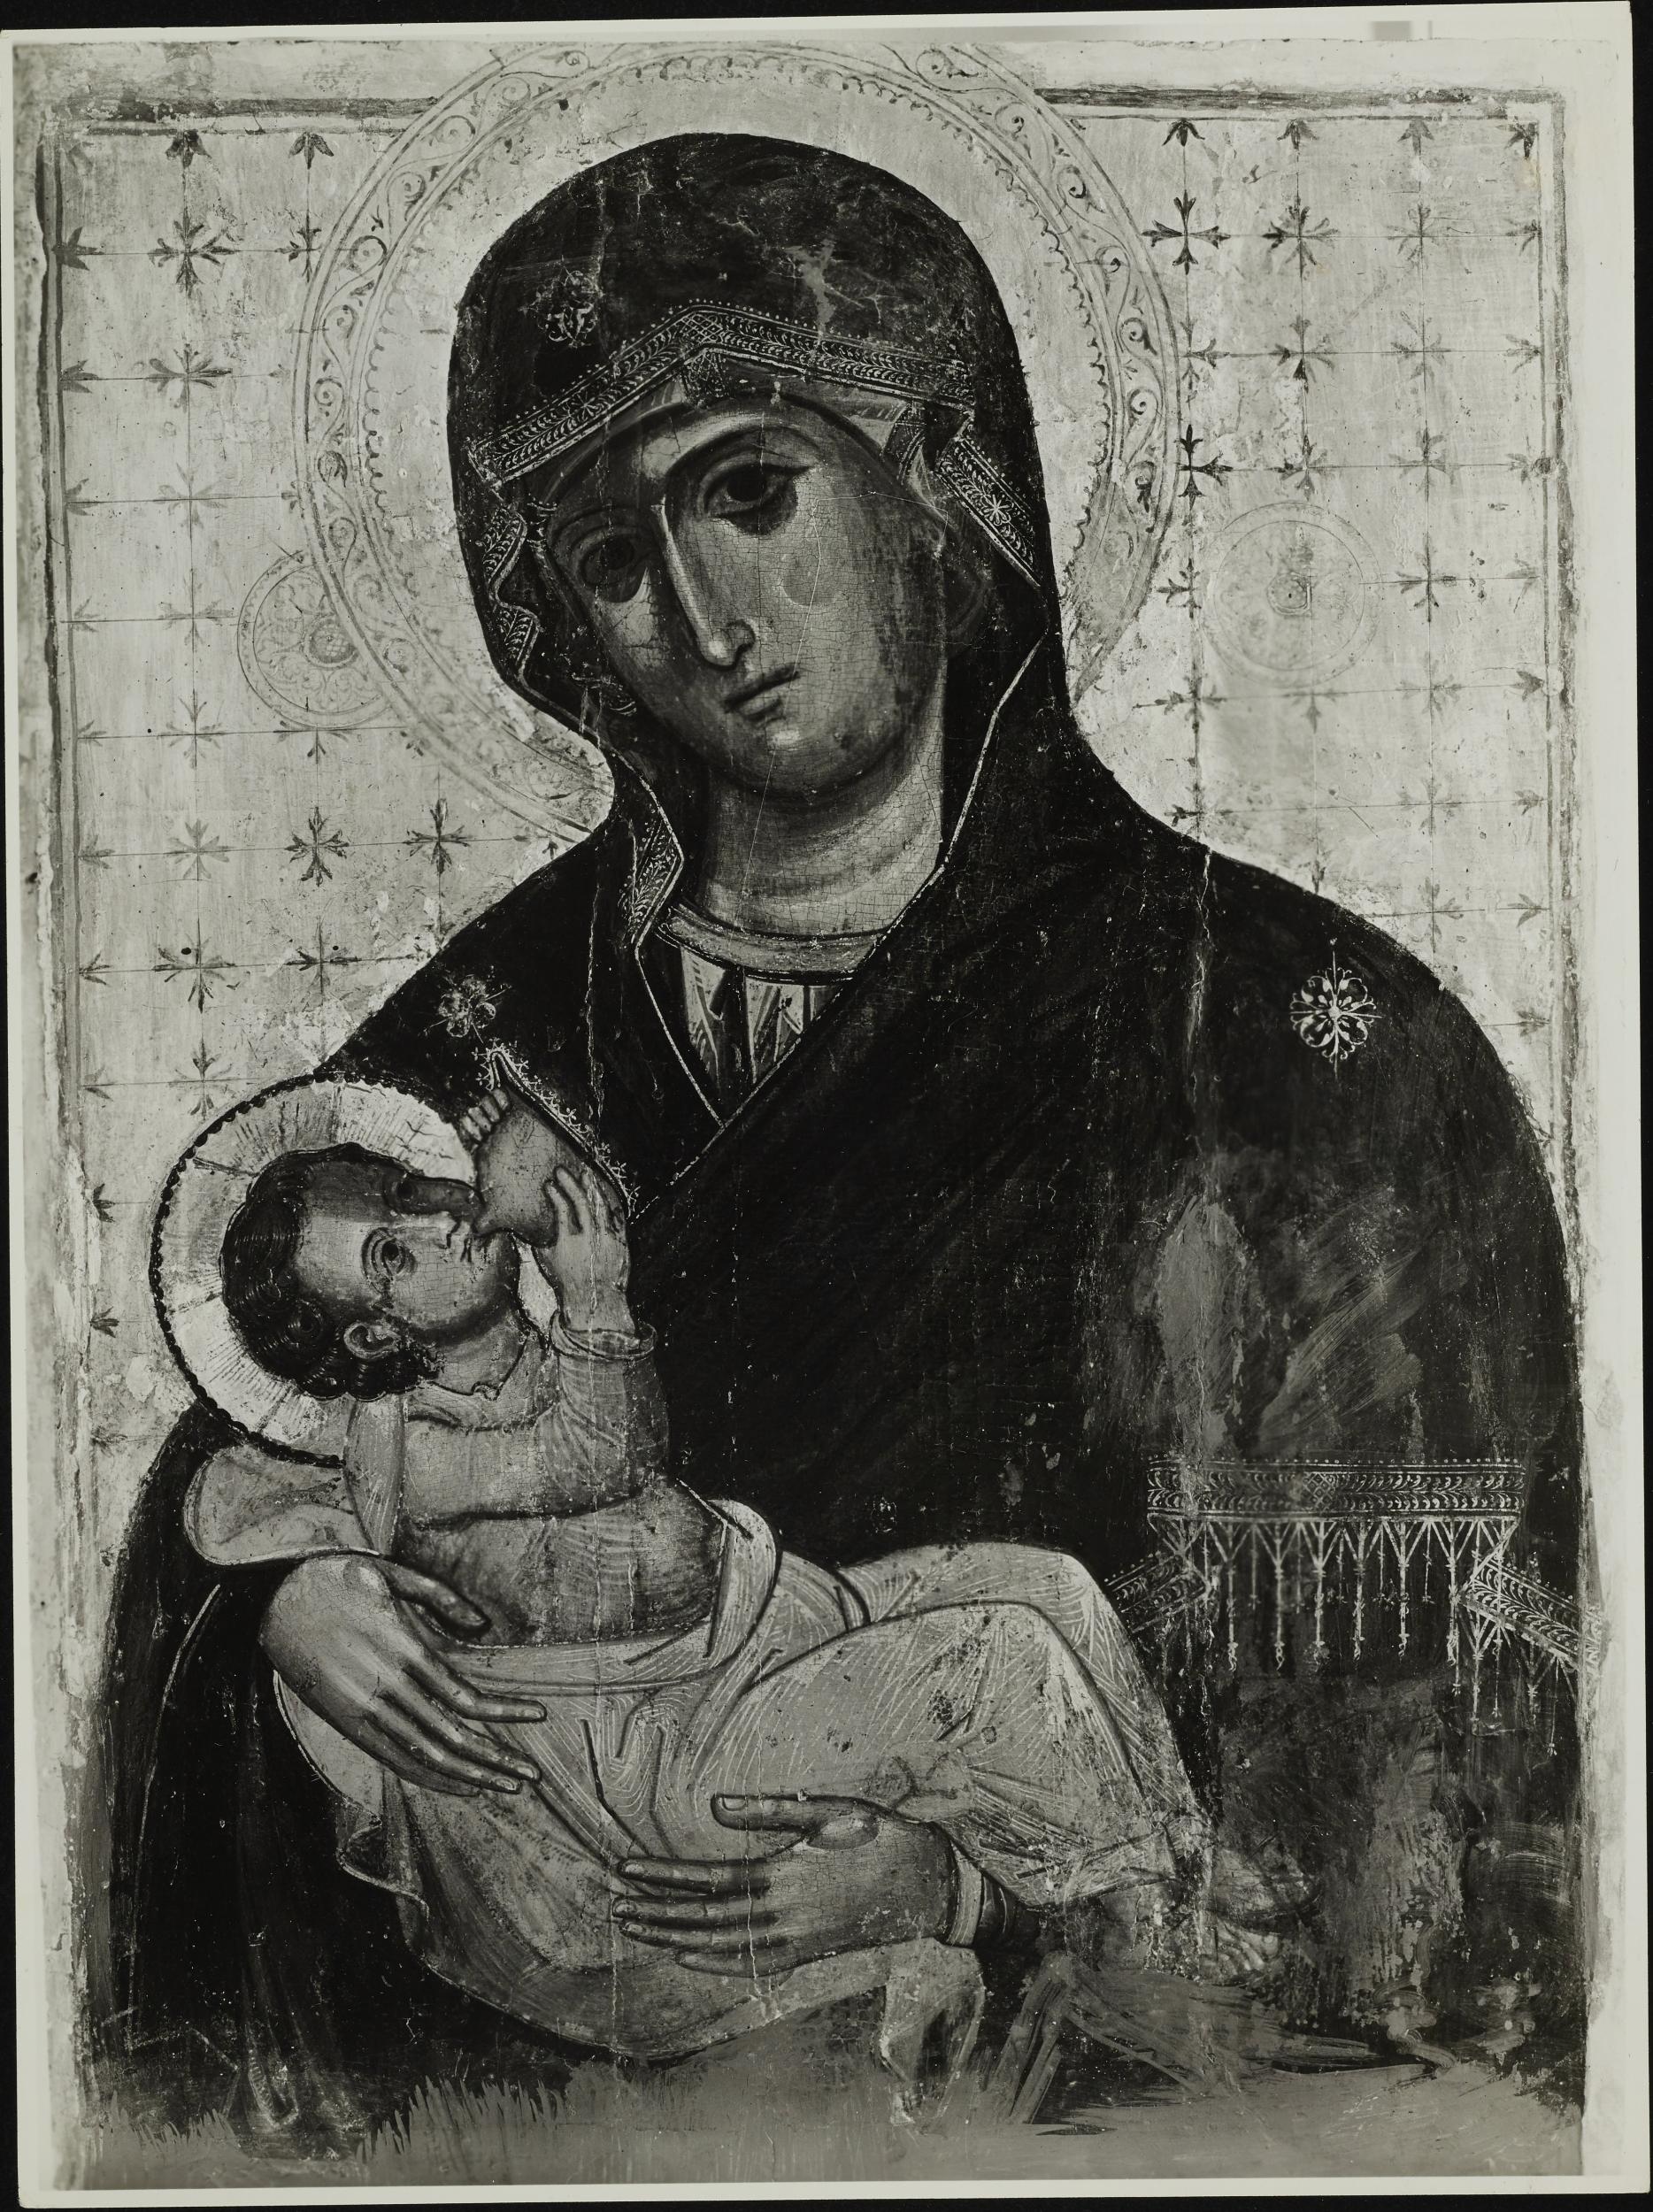 Fotografo non identificato, Mola di Bari - Duomo di S. Nicola di Bari, Madonna col Bambino, 1951-1975, gelatina ai sali d'argento/carta, MPI6065284